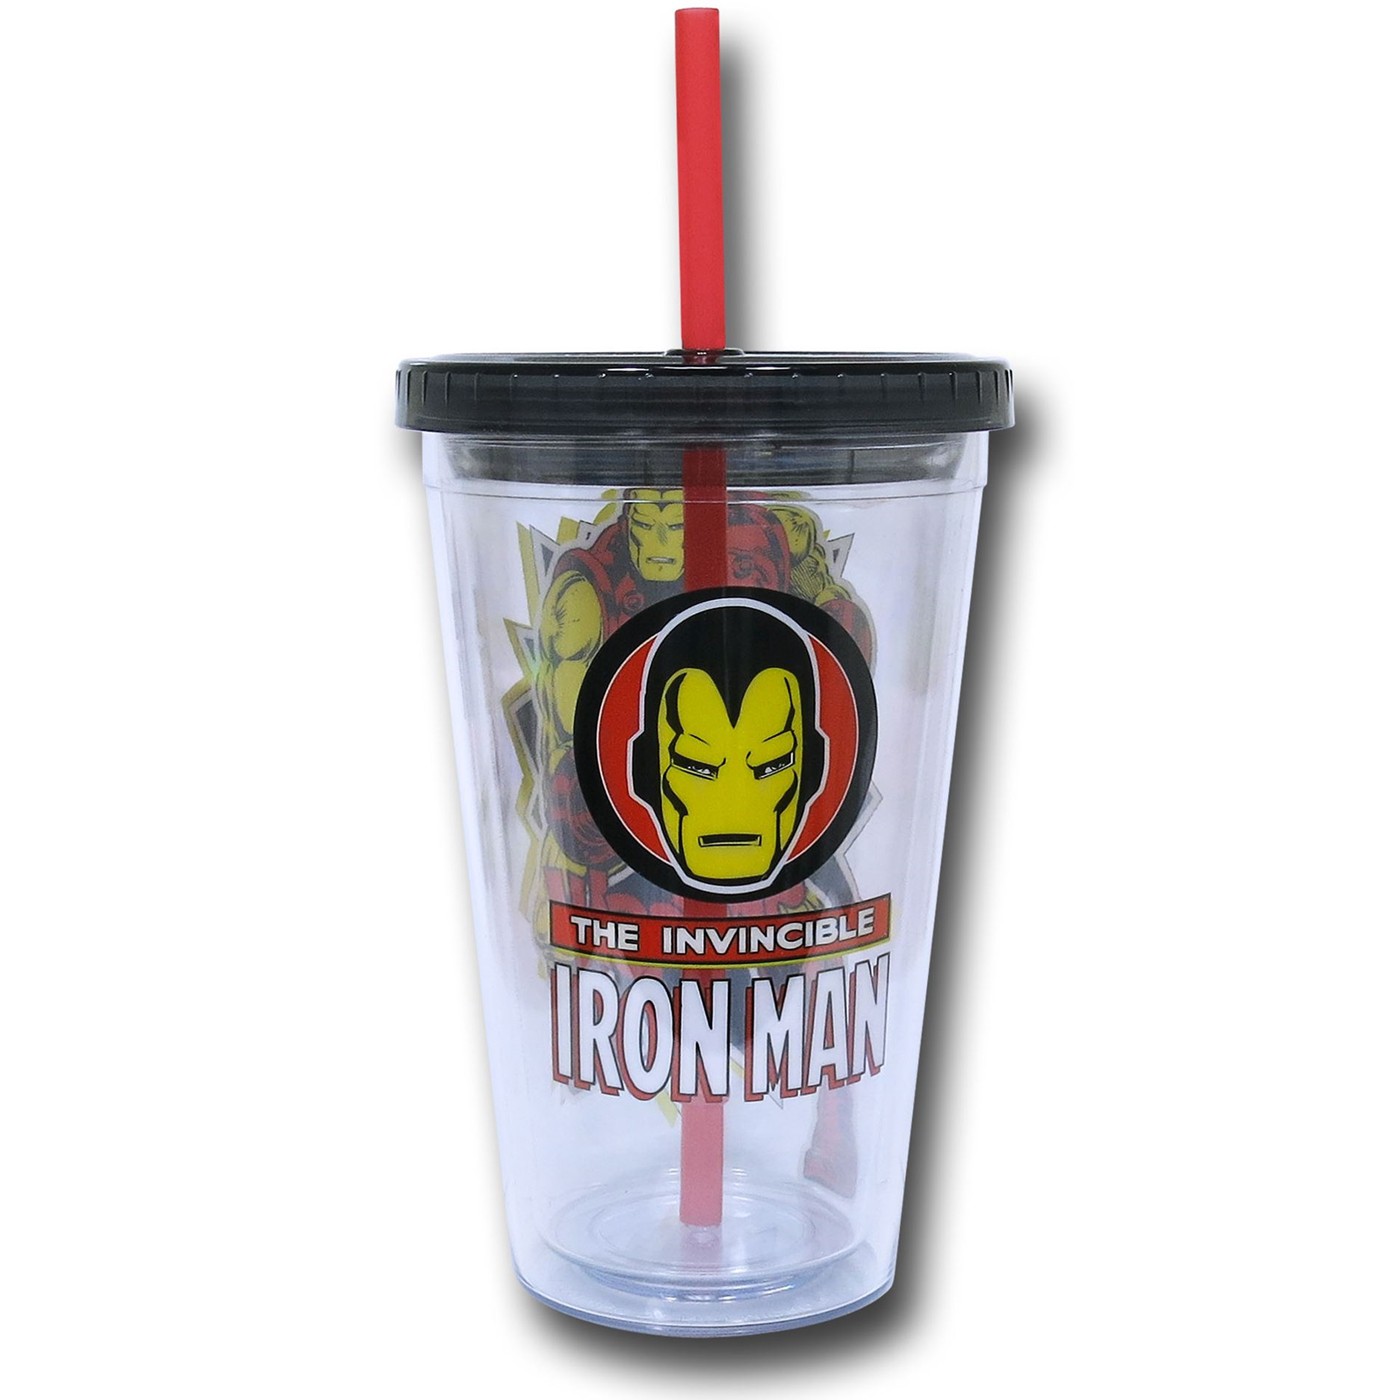 Iron Man 18oz Acrylic Cold Cup